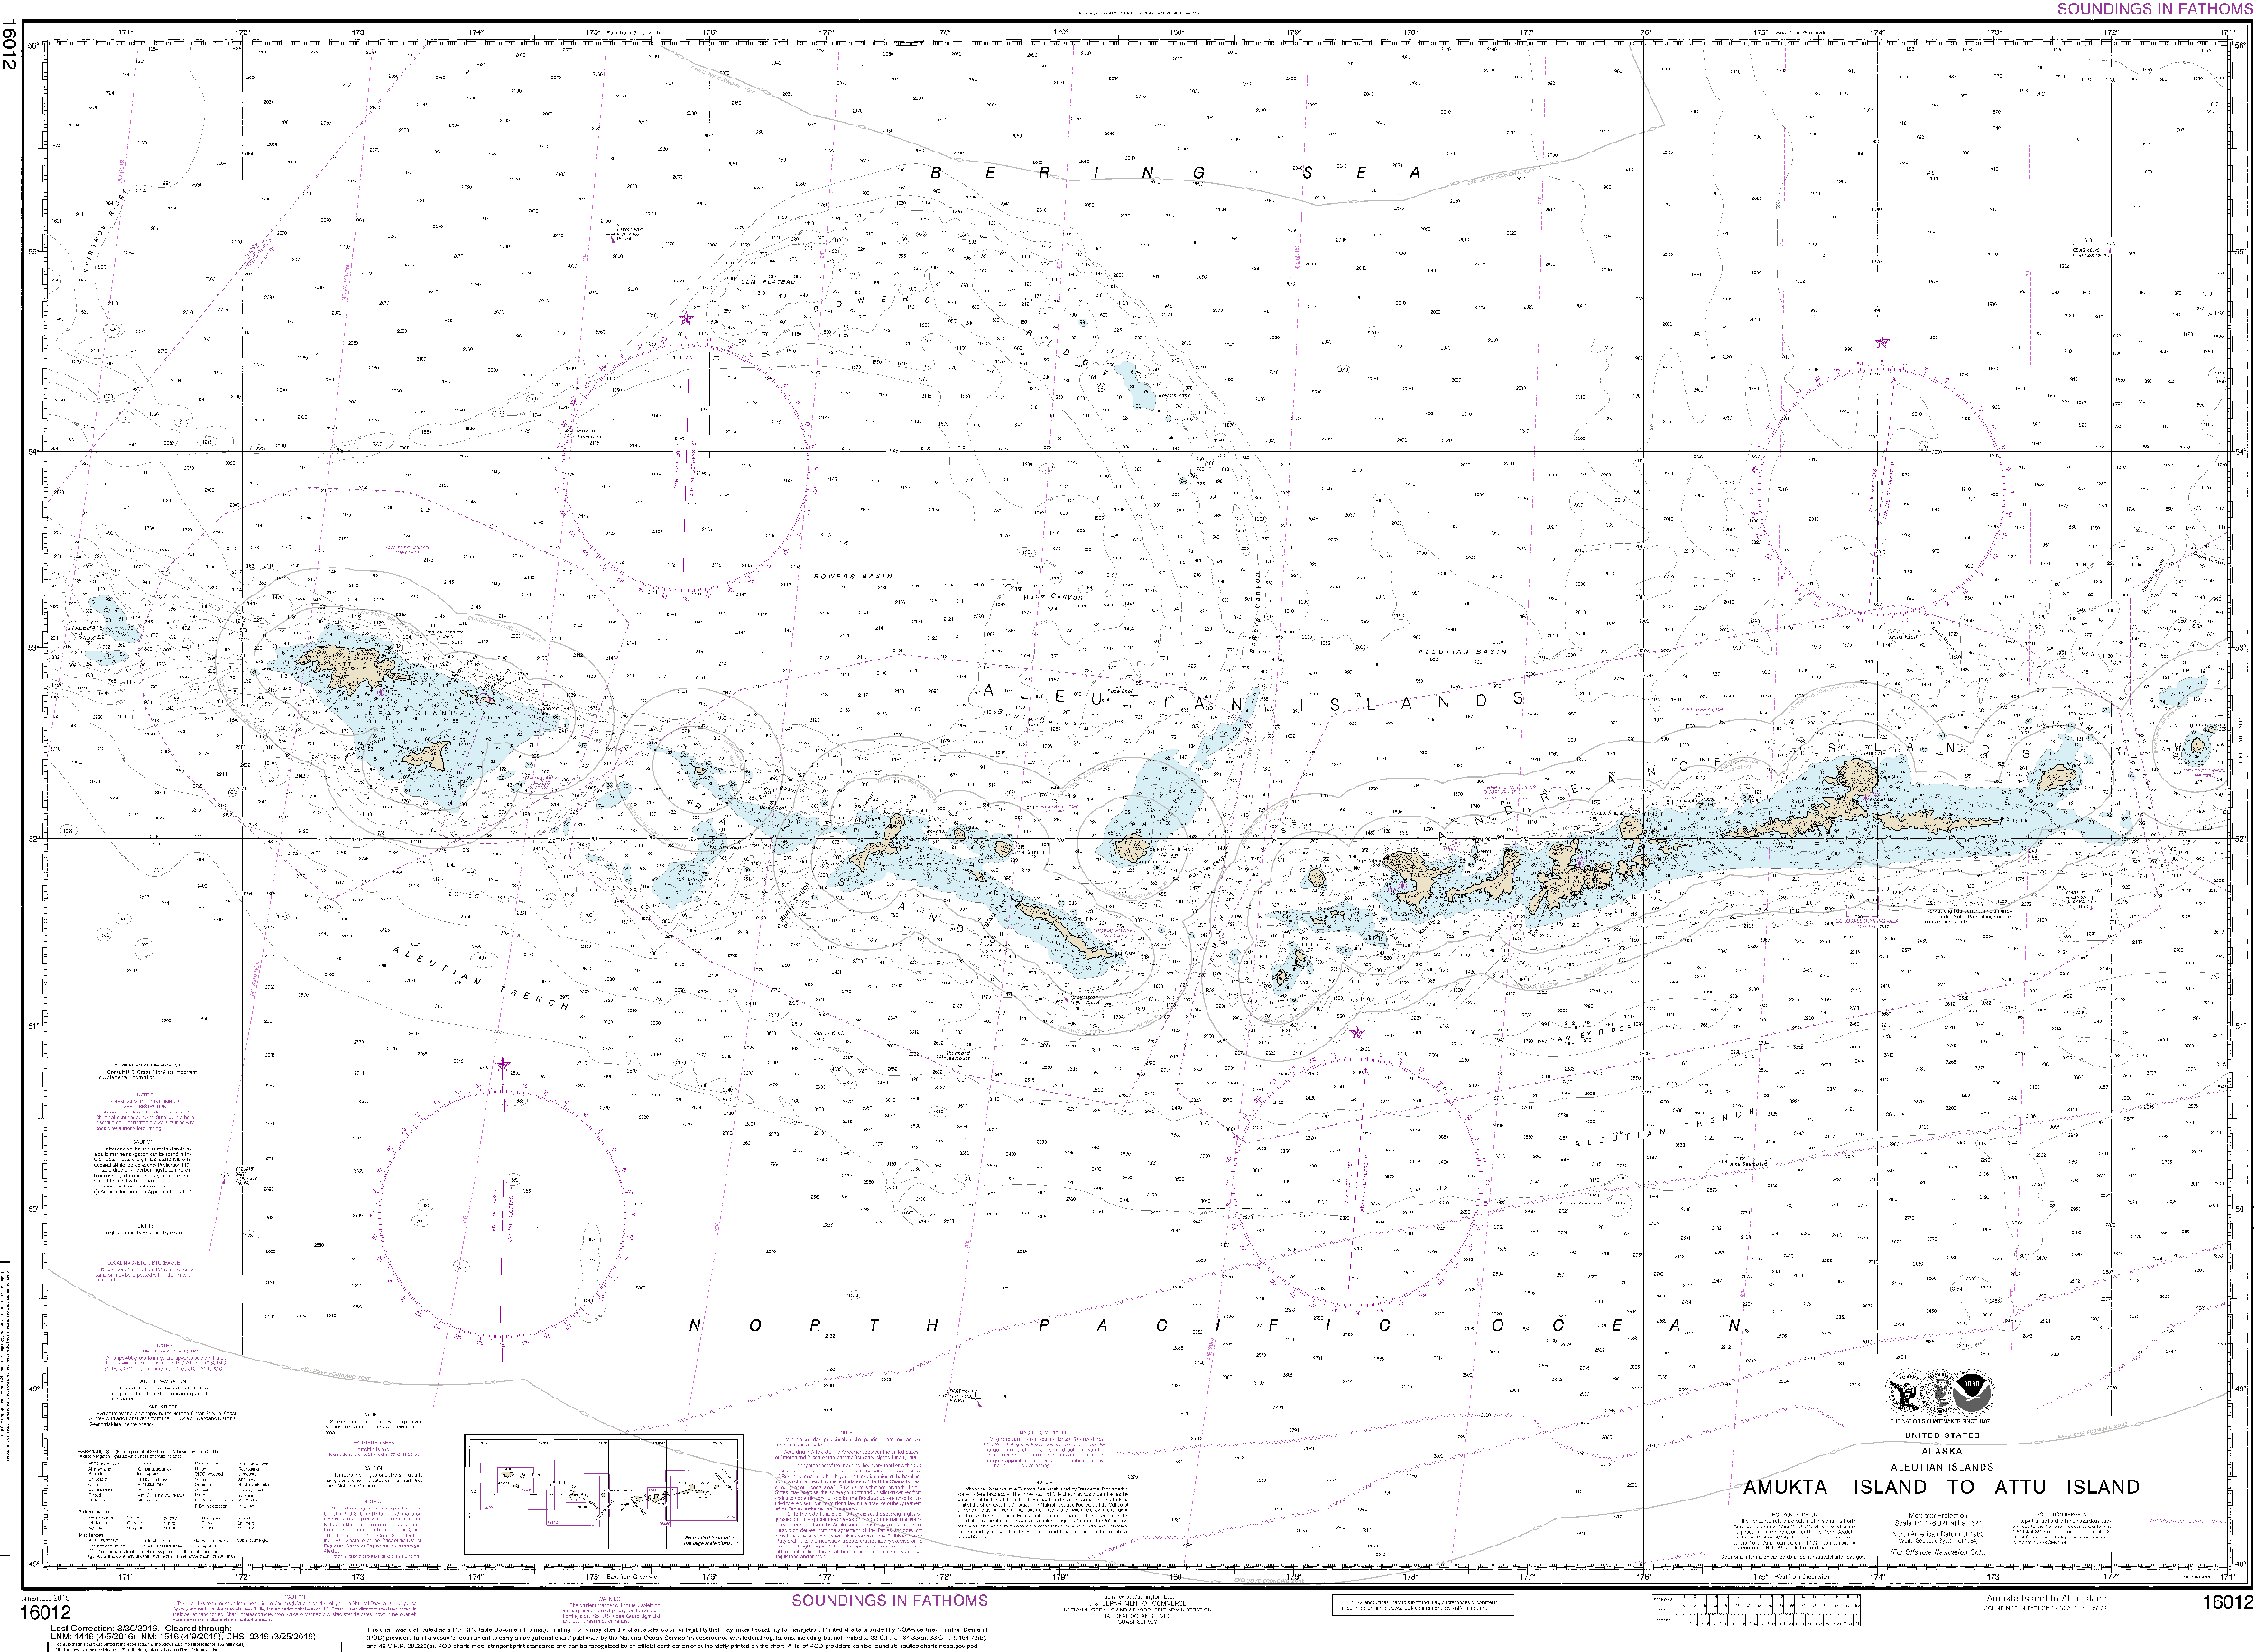 NOAA Nautical Chart 16012: Aleutian Islands Amukta Island to Attu Island